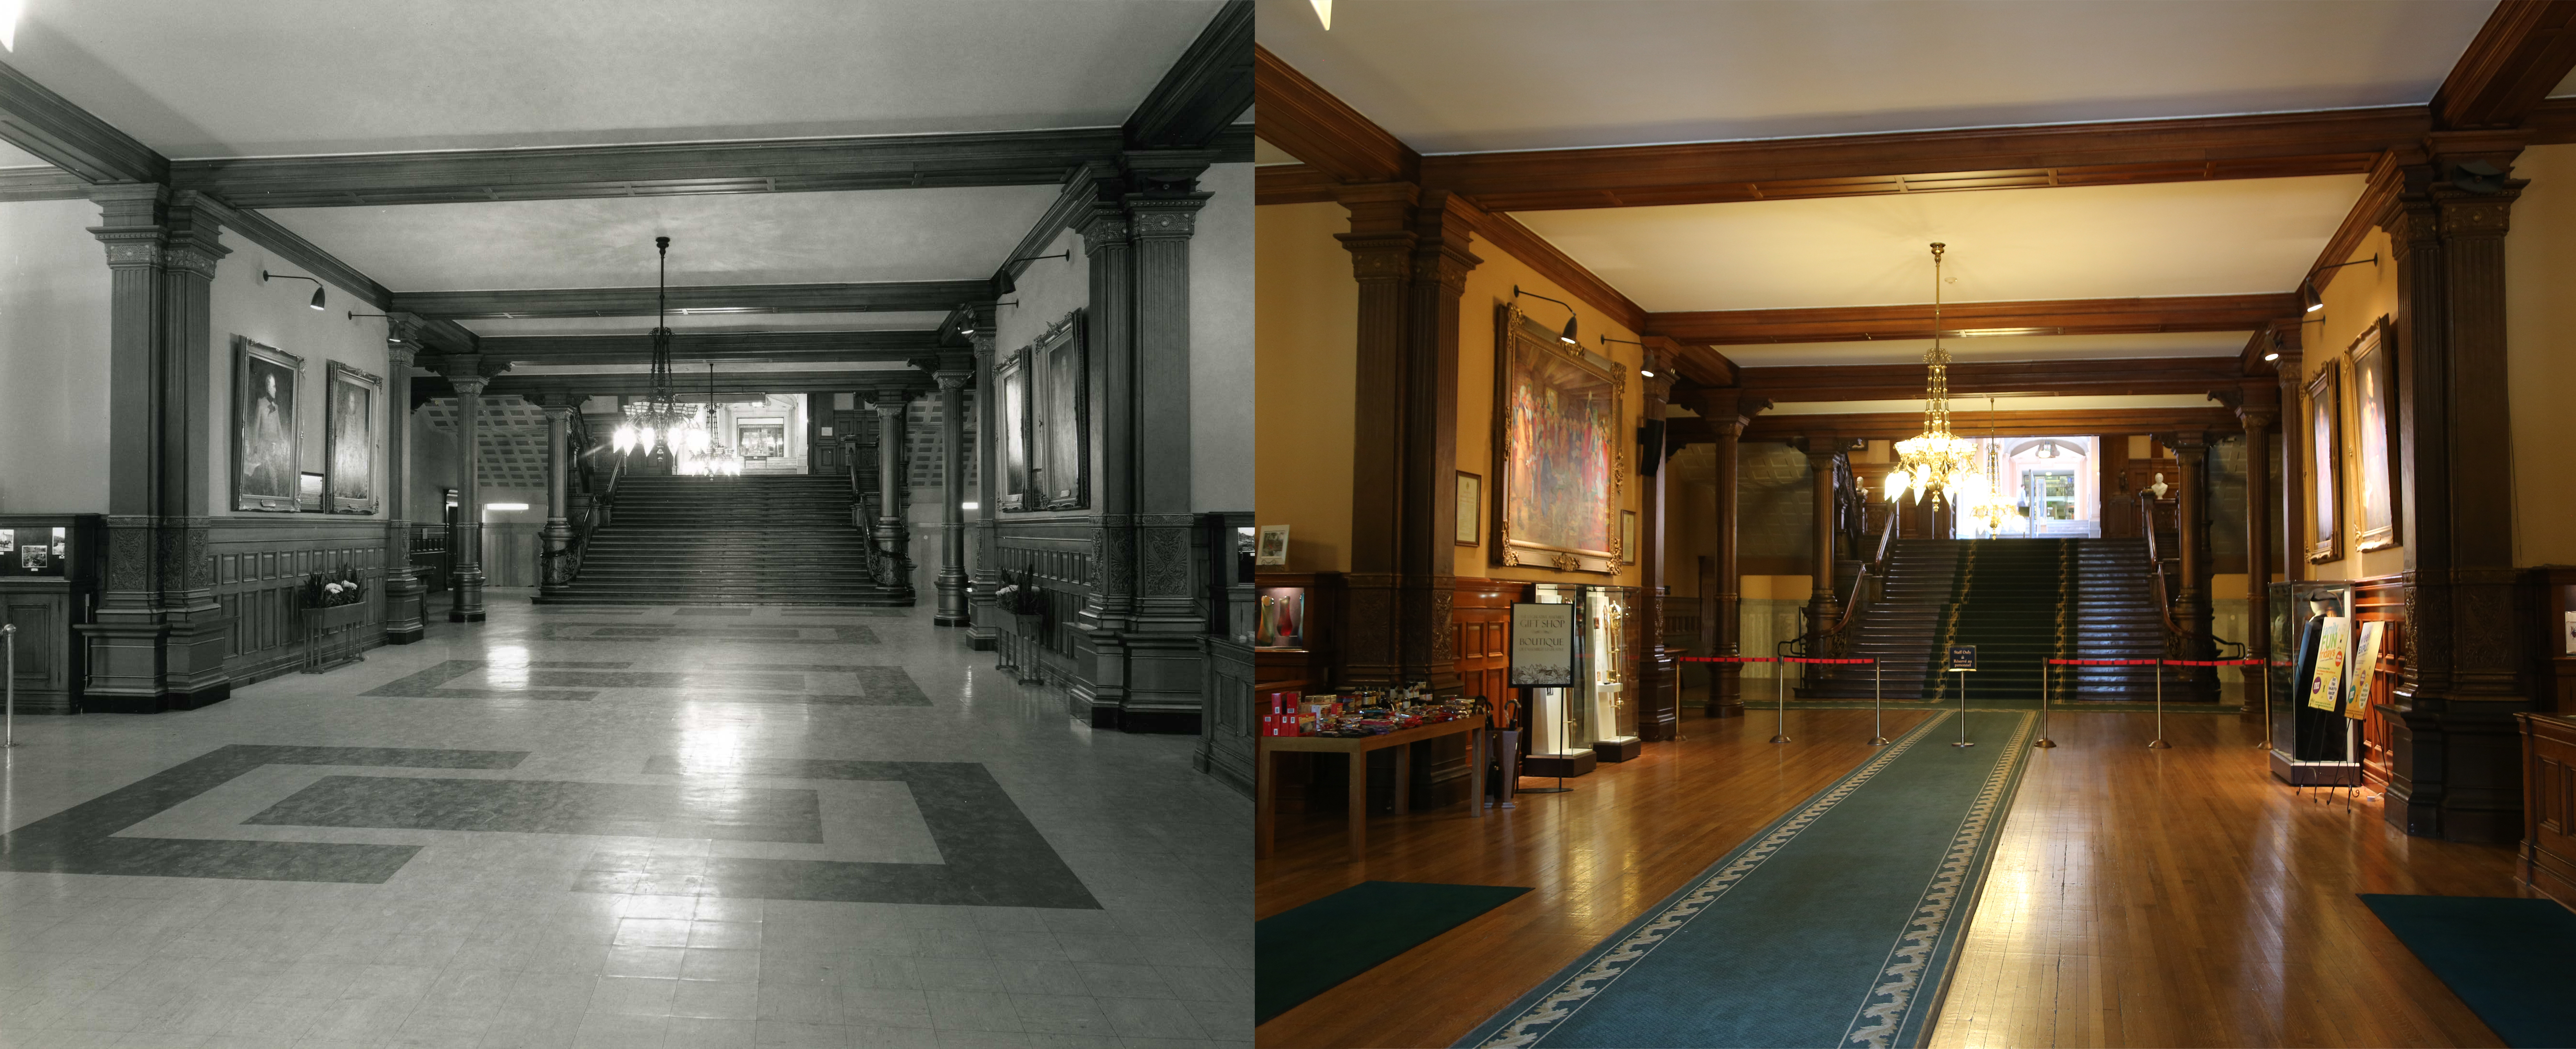 Images contrastées du hall d'entrée de l'édifice législatif